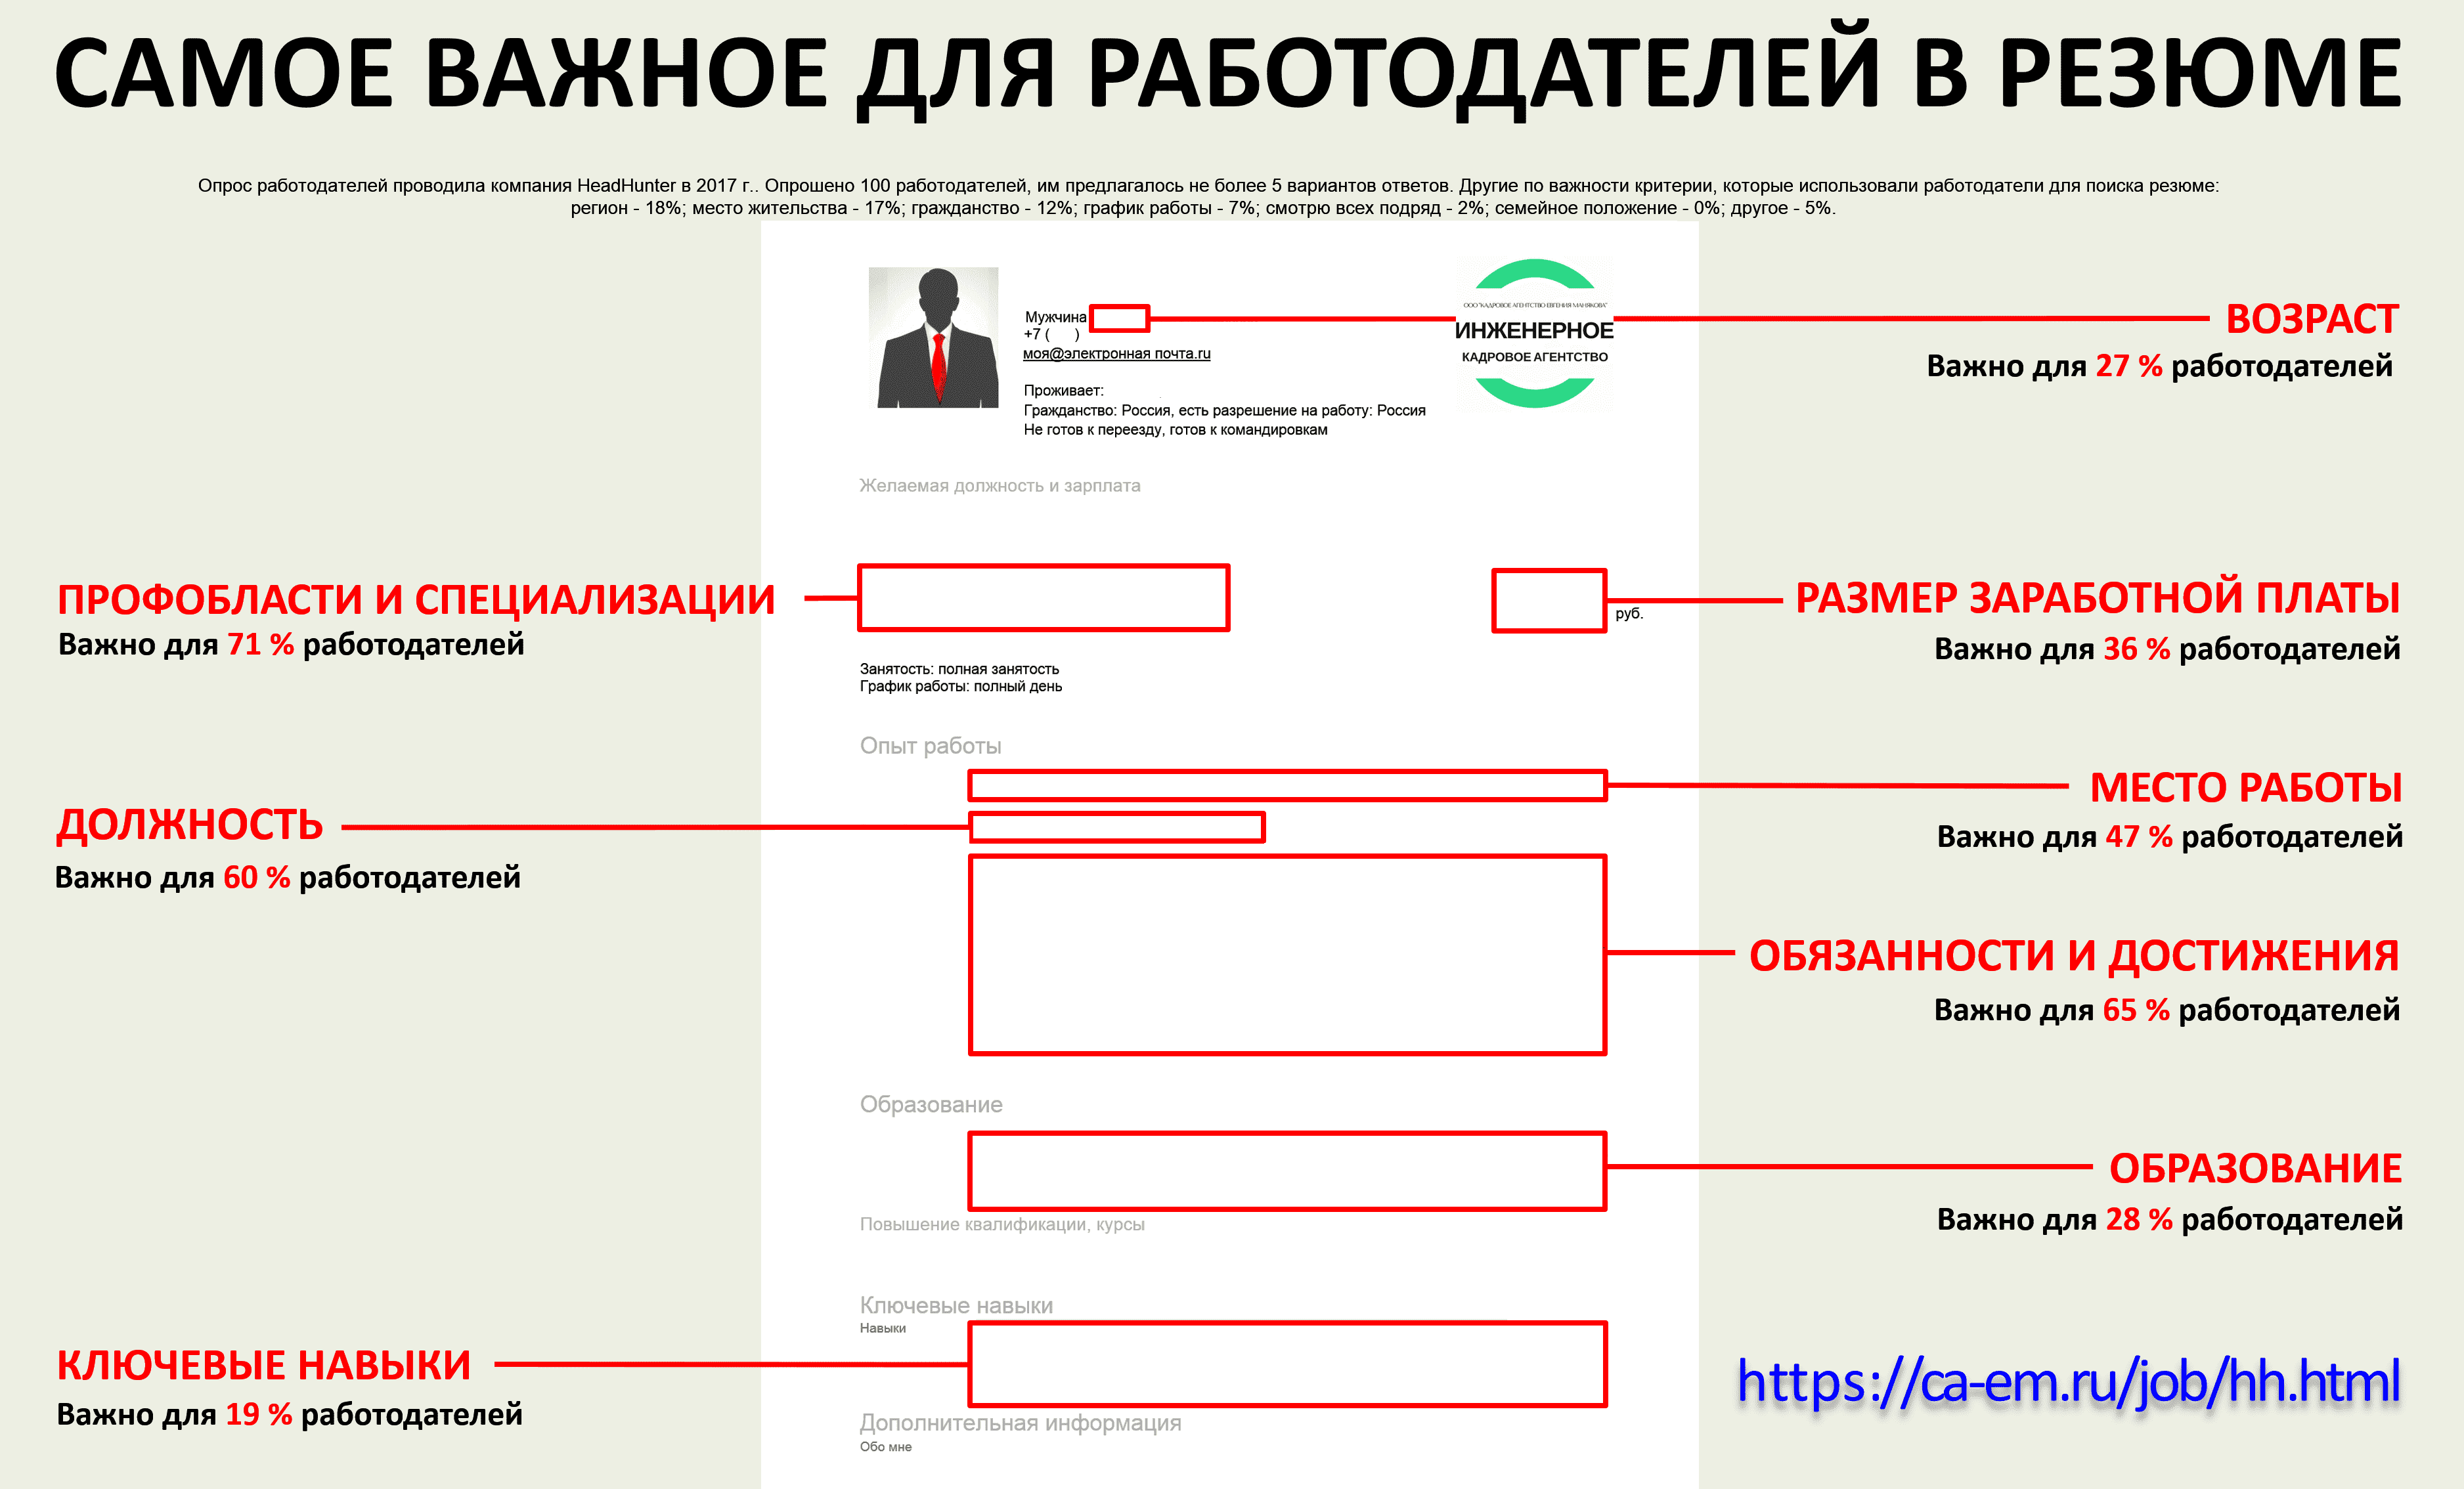 Резюме для поиска работы на хх.ру